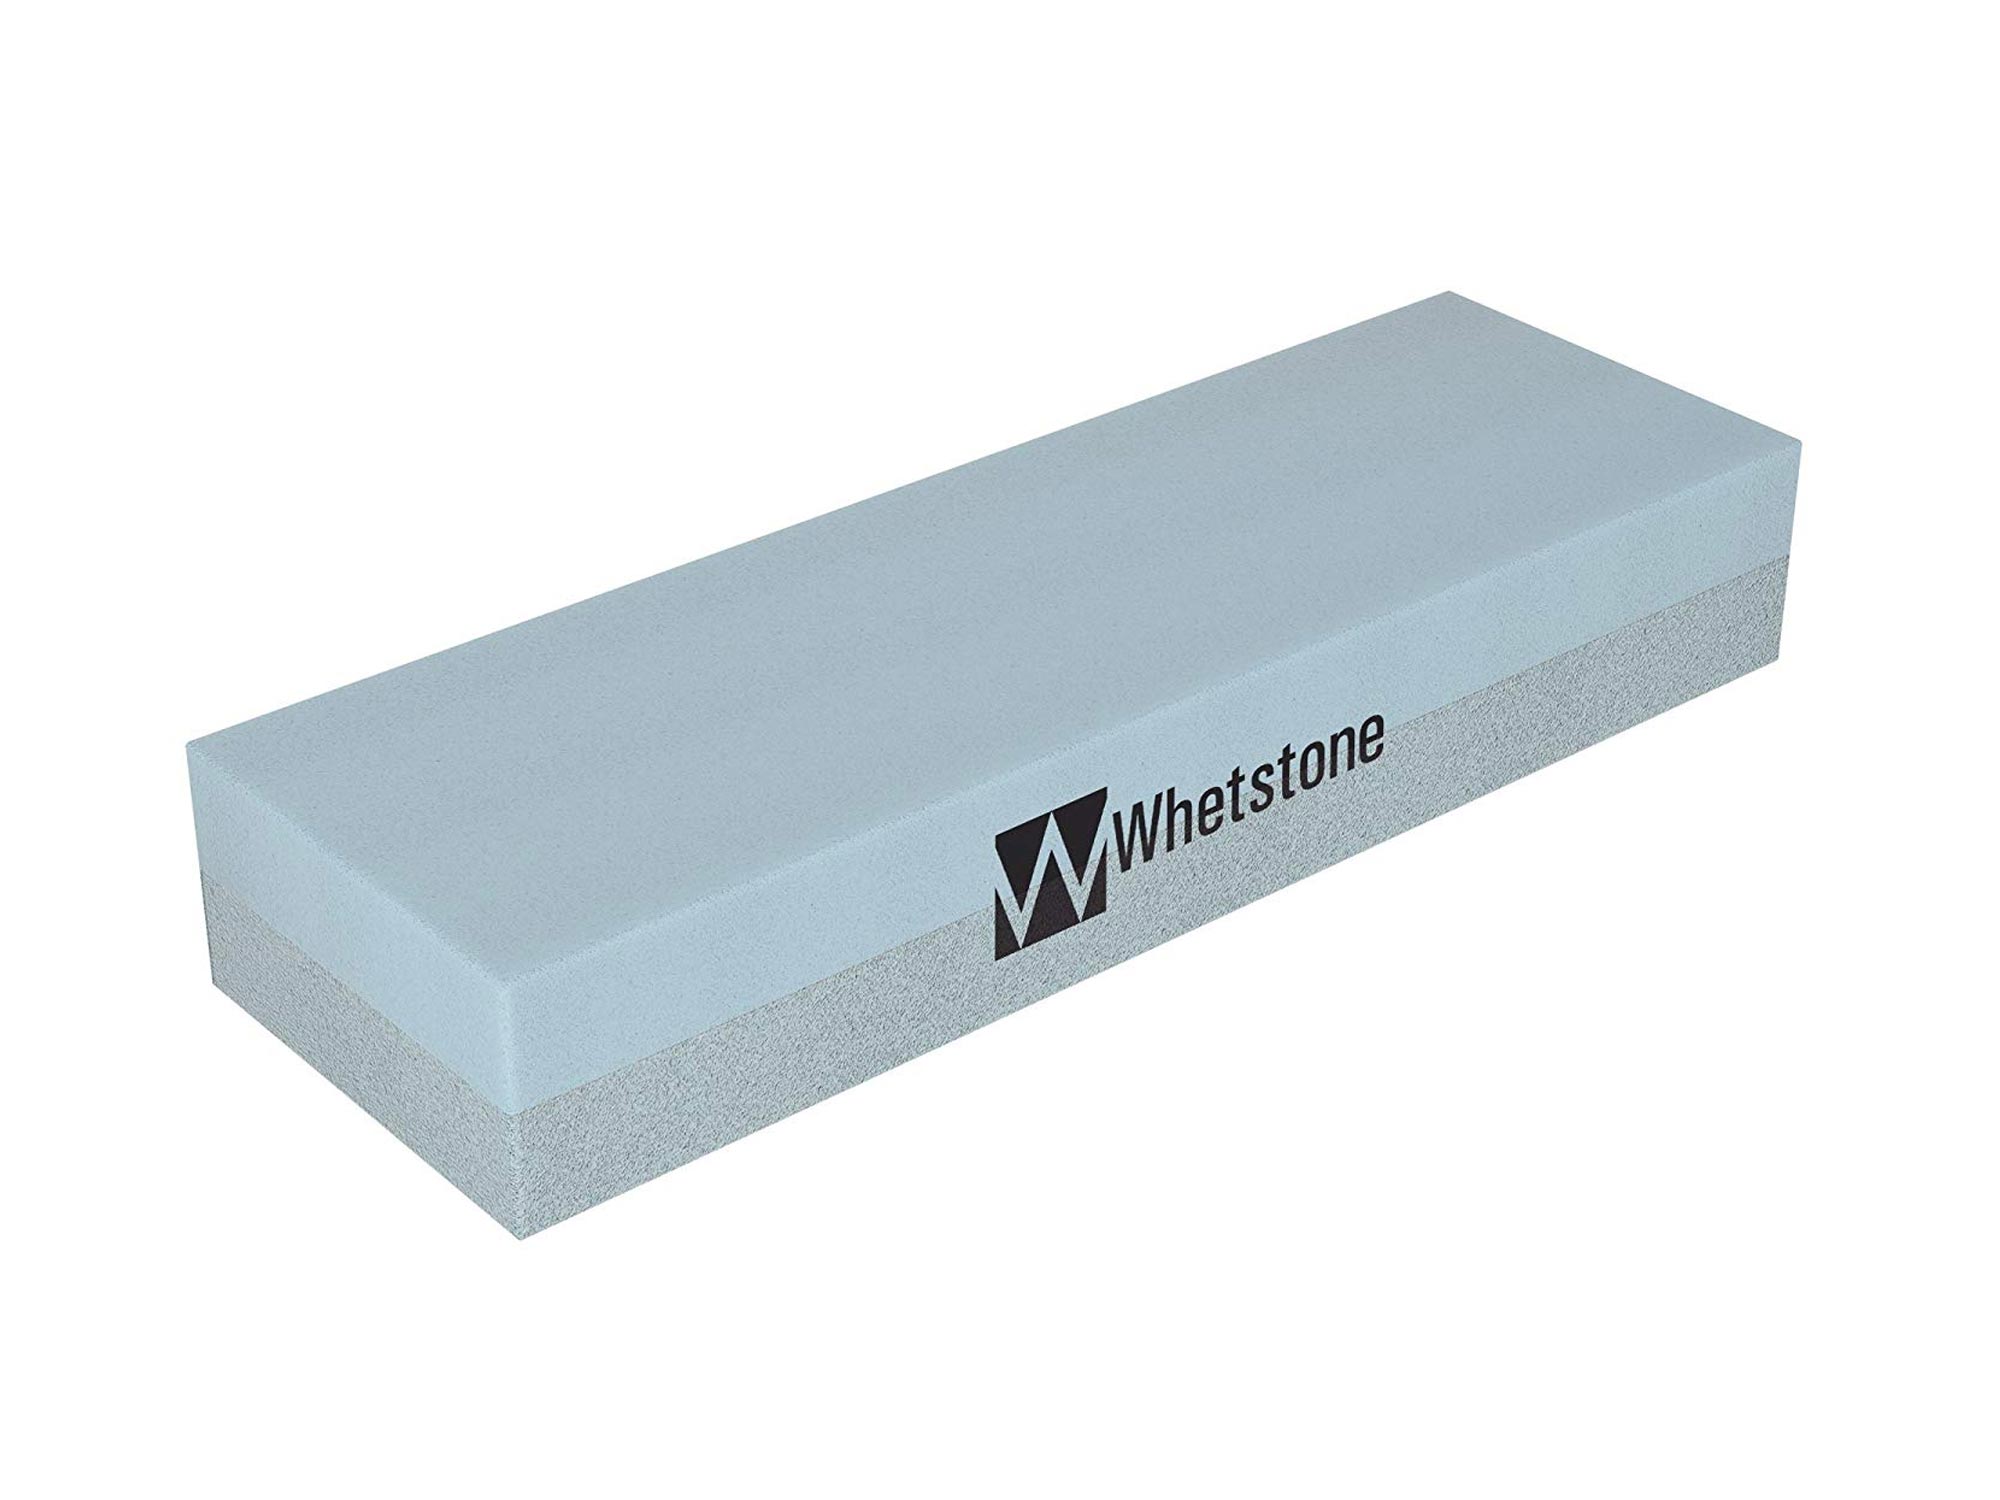 Whetstone stone sharpener